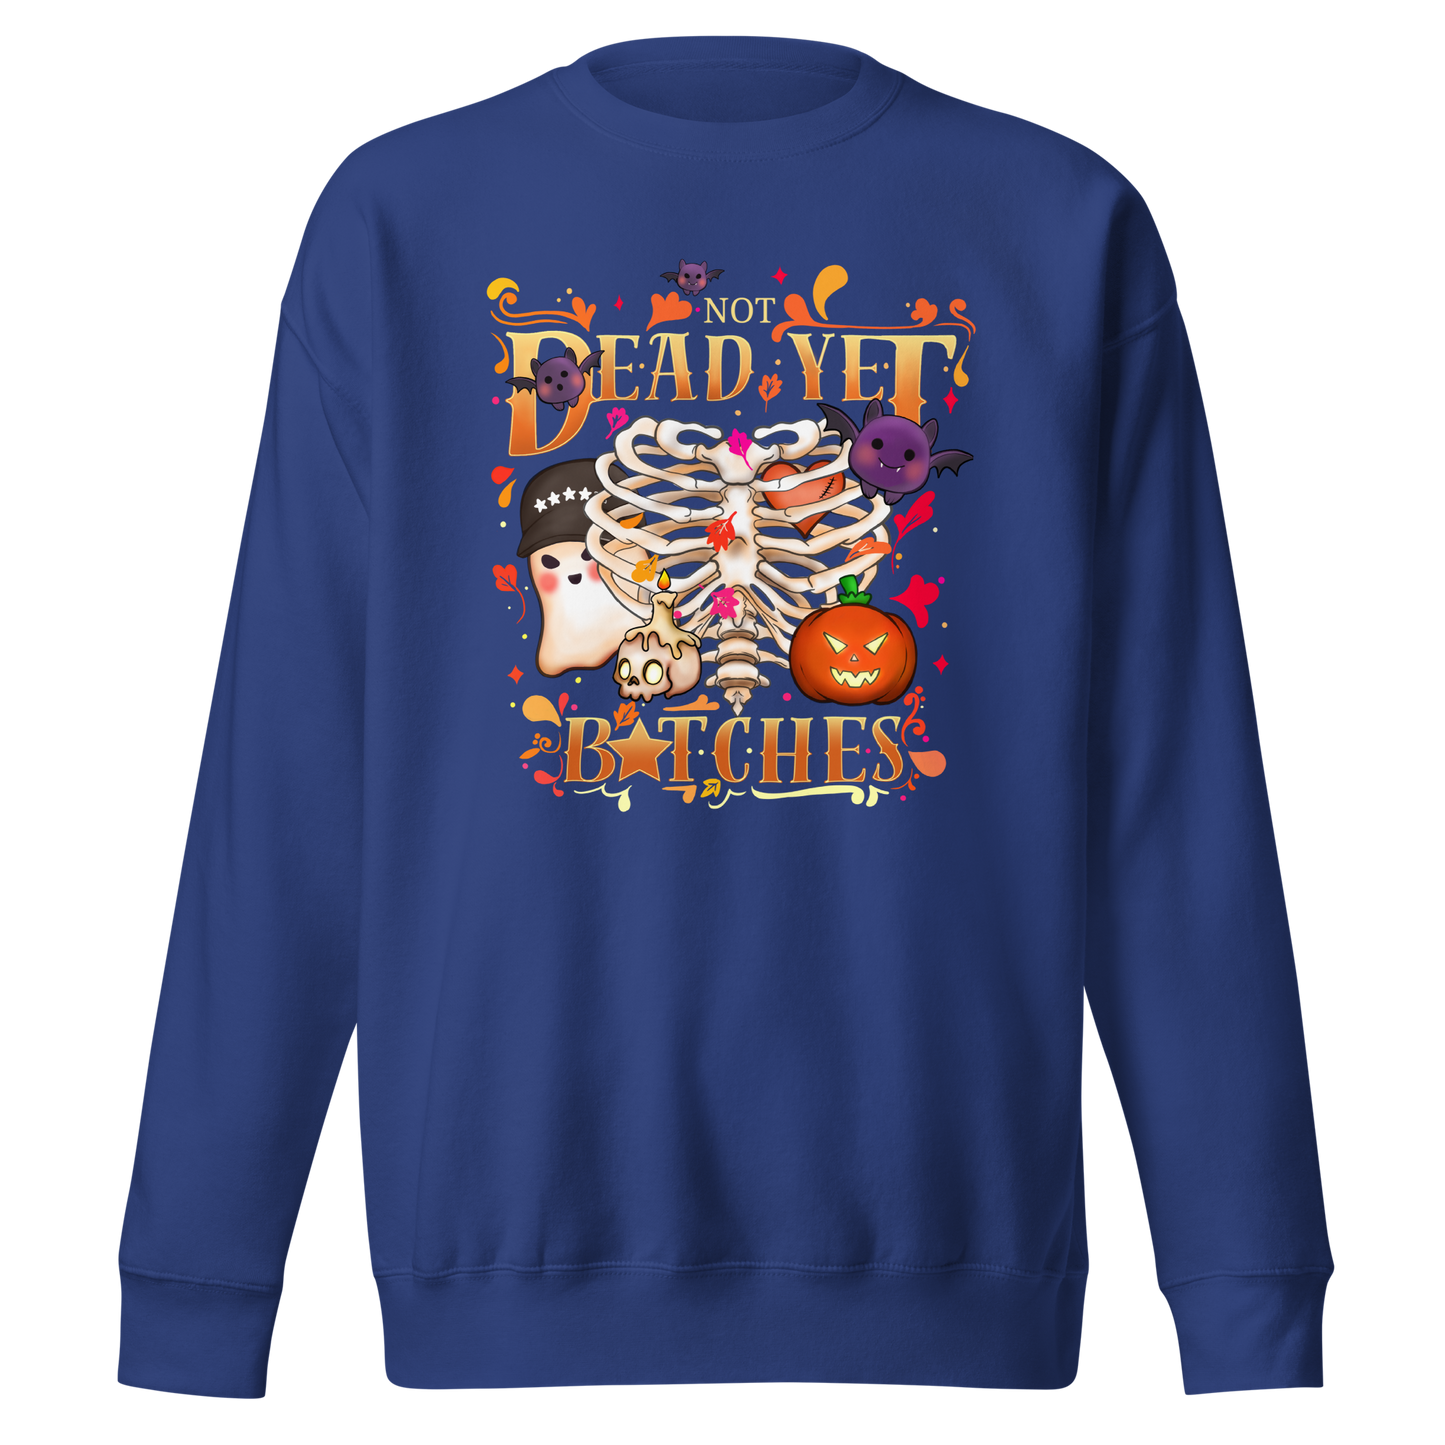 Not Dead Yet (Full Color) Sweatshirt